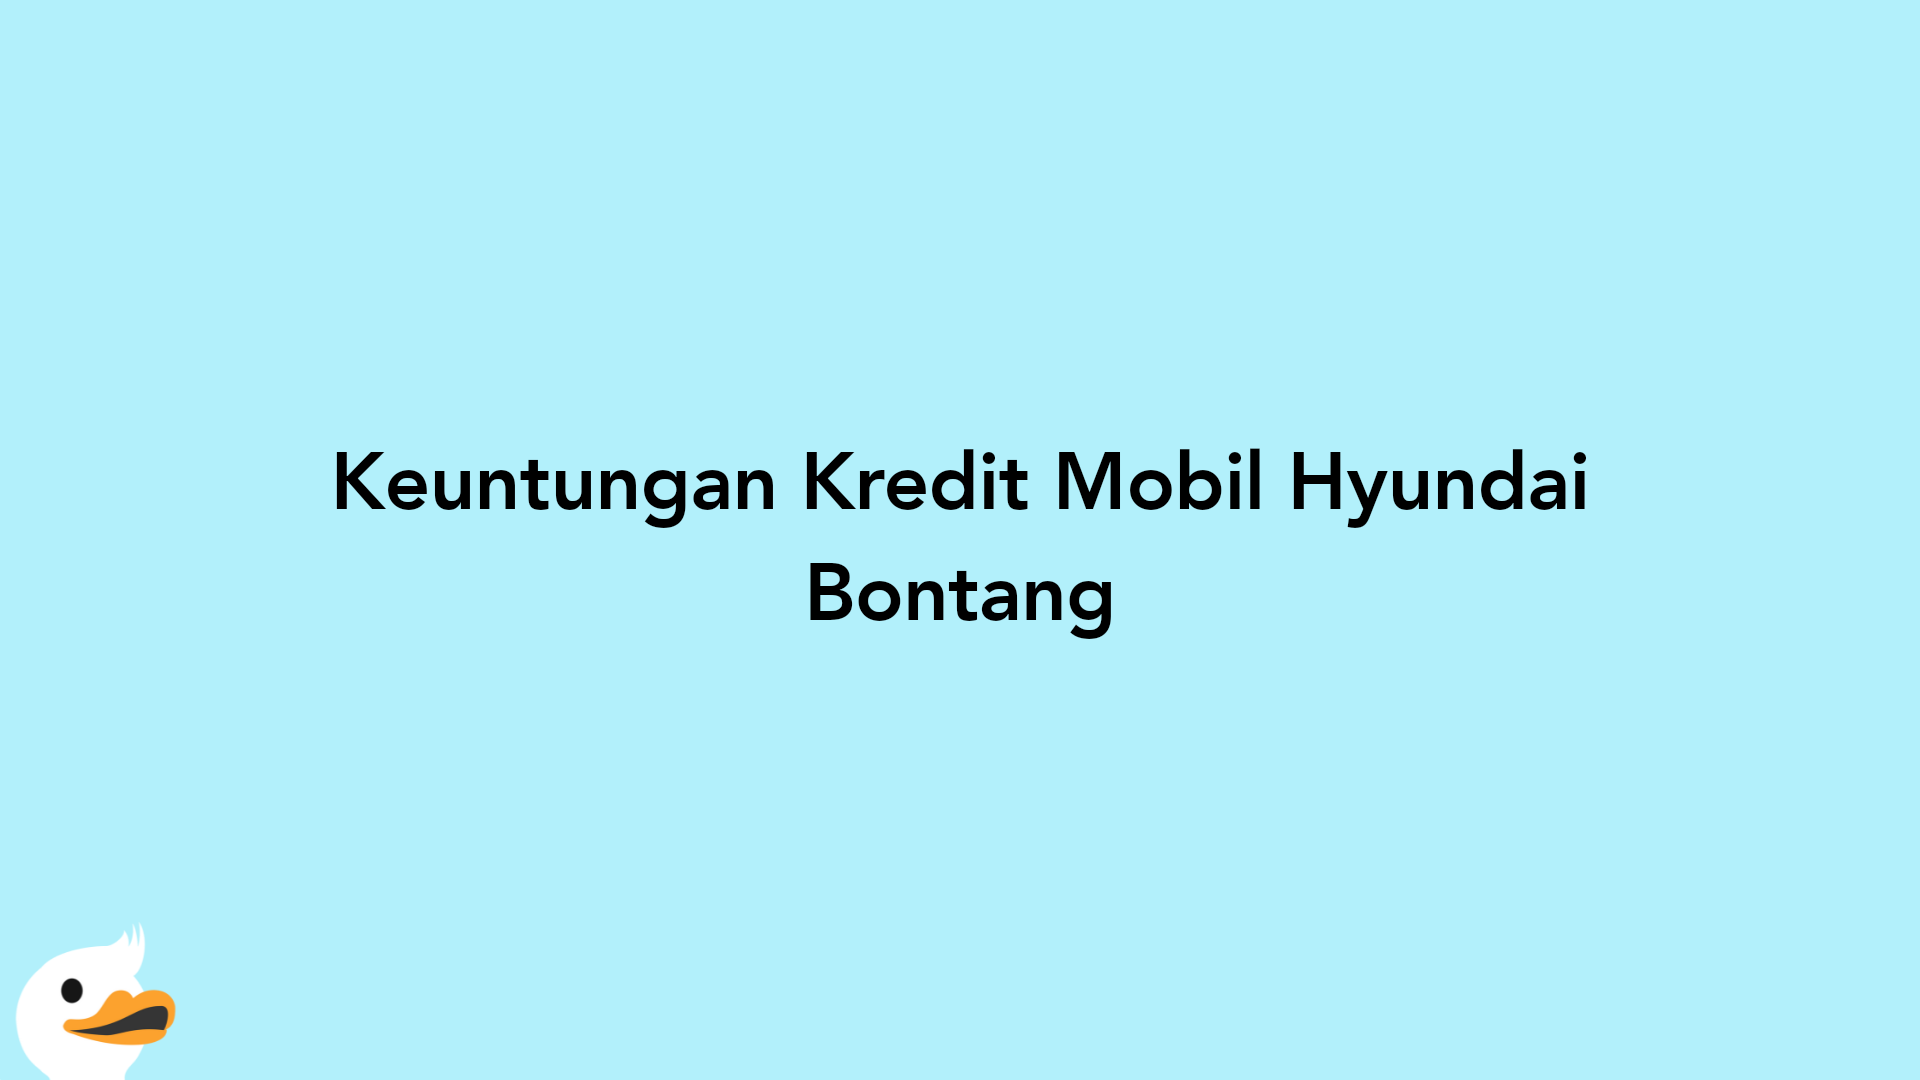 Keuntungan Kredit Mobil Hyundai Bontang